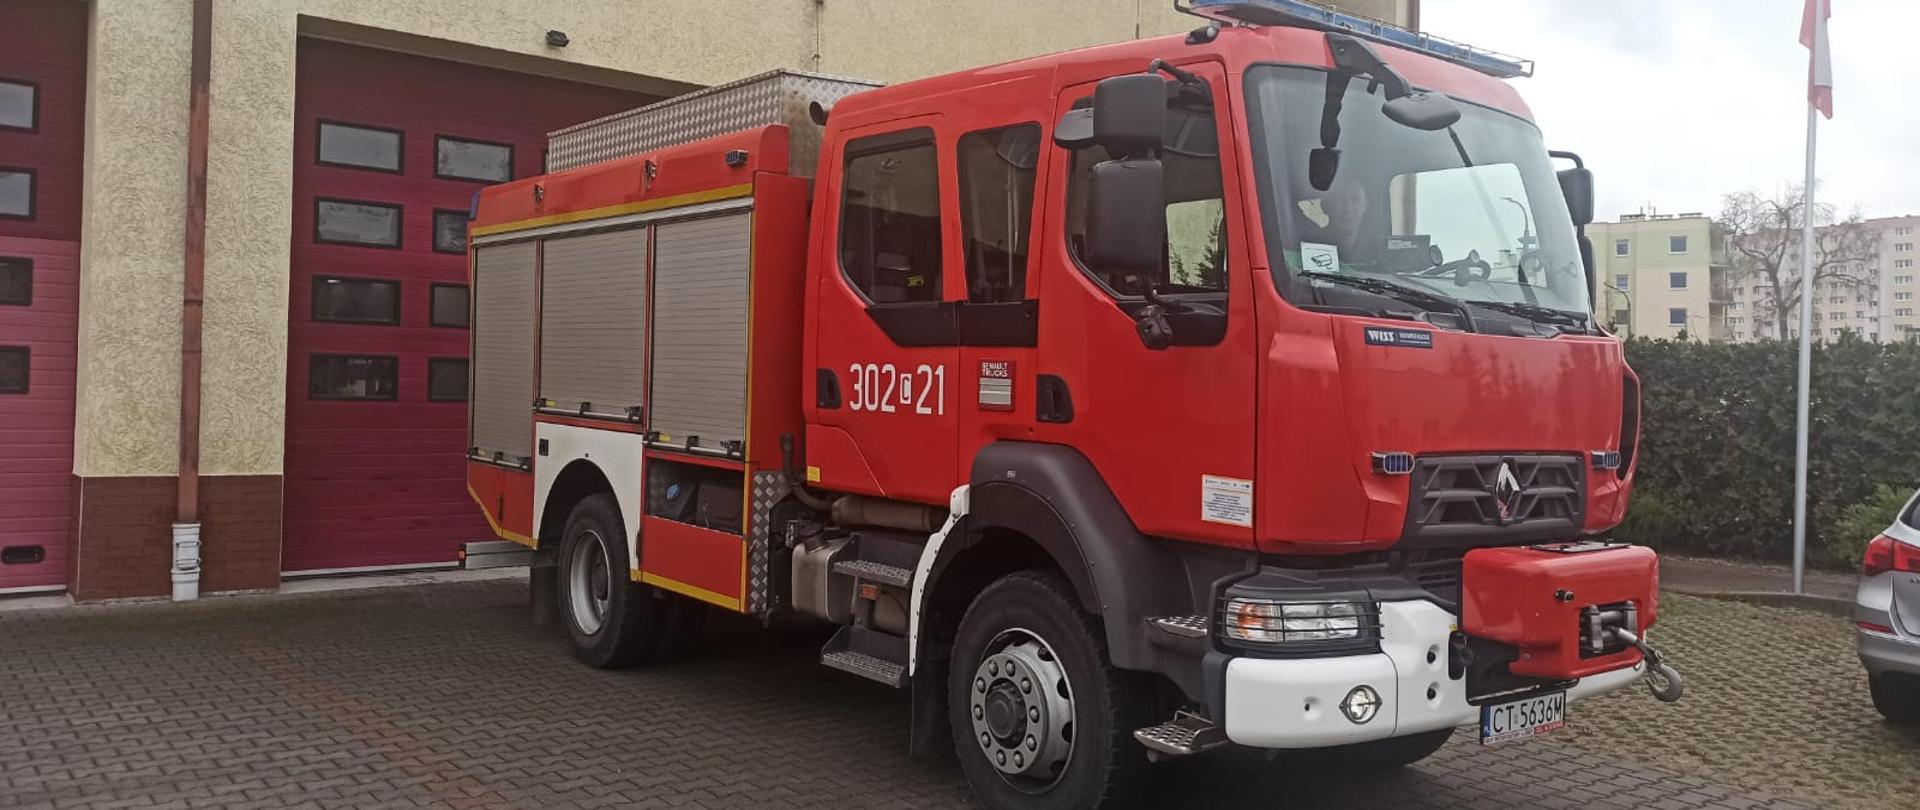 Samochód strażacki ciężarowy ratowniczo-gaśniczy Jednostki Ratowniczo-Gaśniczej nr 2 w Bydgoszczy, podwozie marki Renault, w tle budynek jednostki.